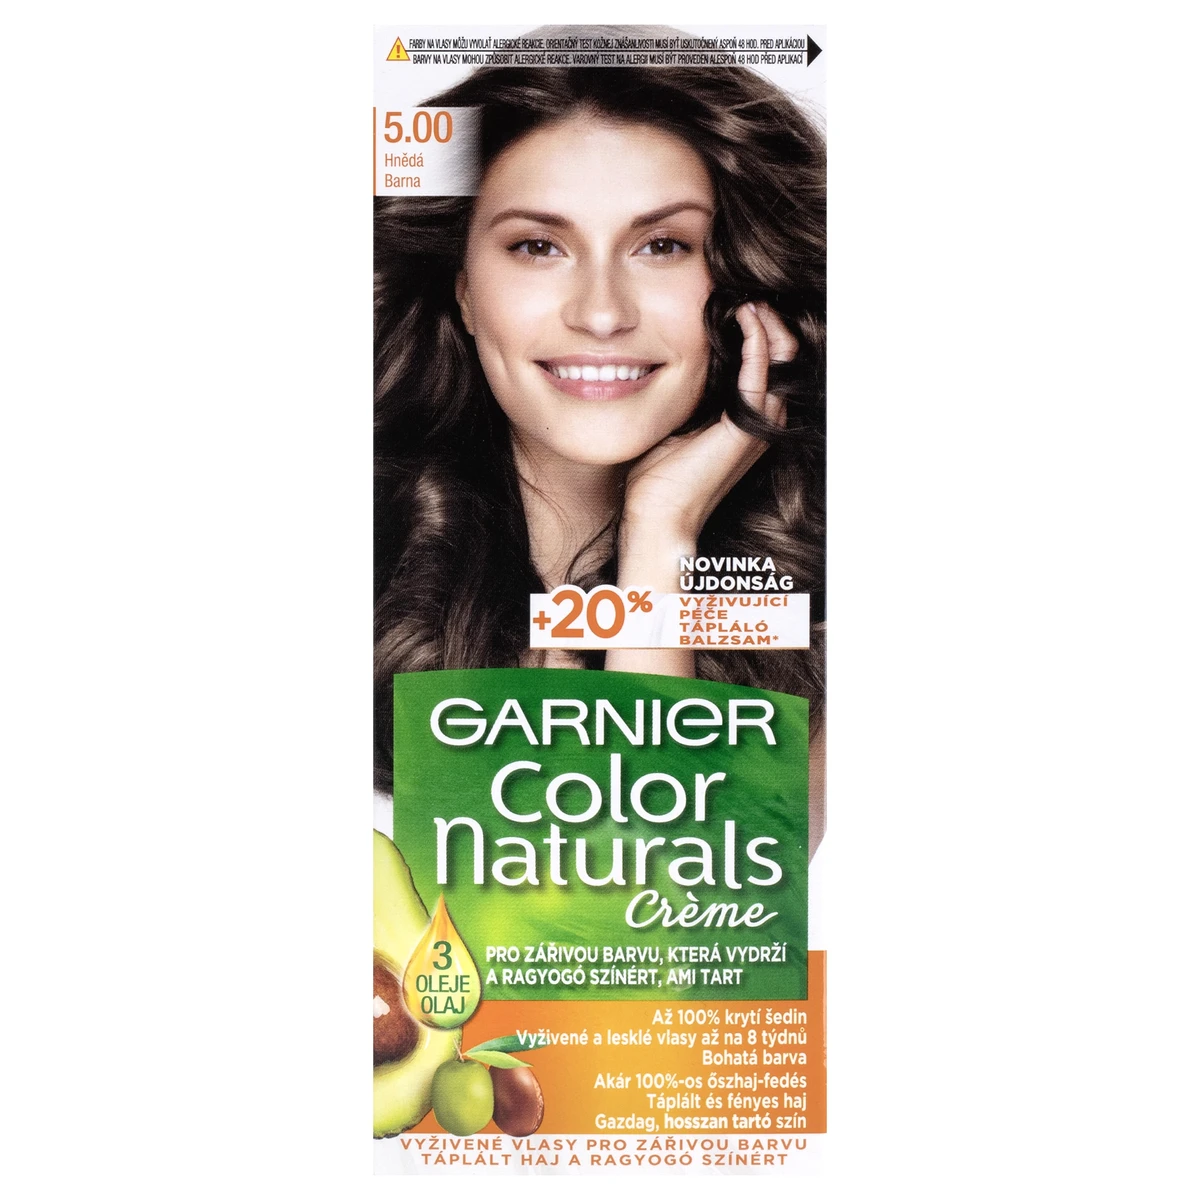 Garnier Color Naturals Crème 5.00 Barna tartós tápláló hajfesték